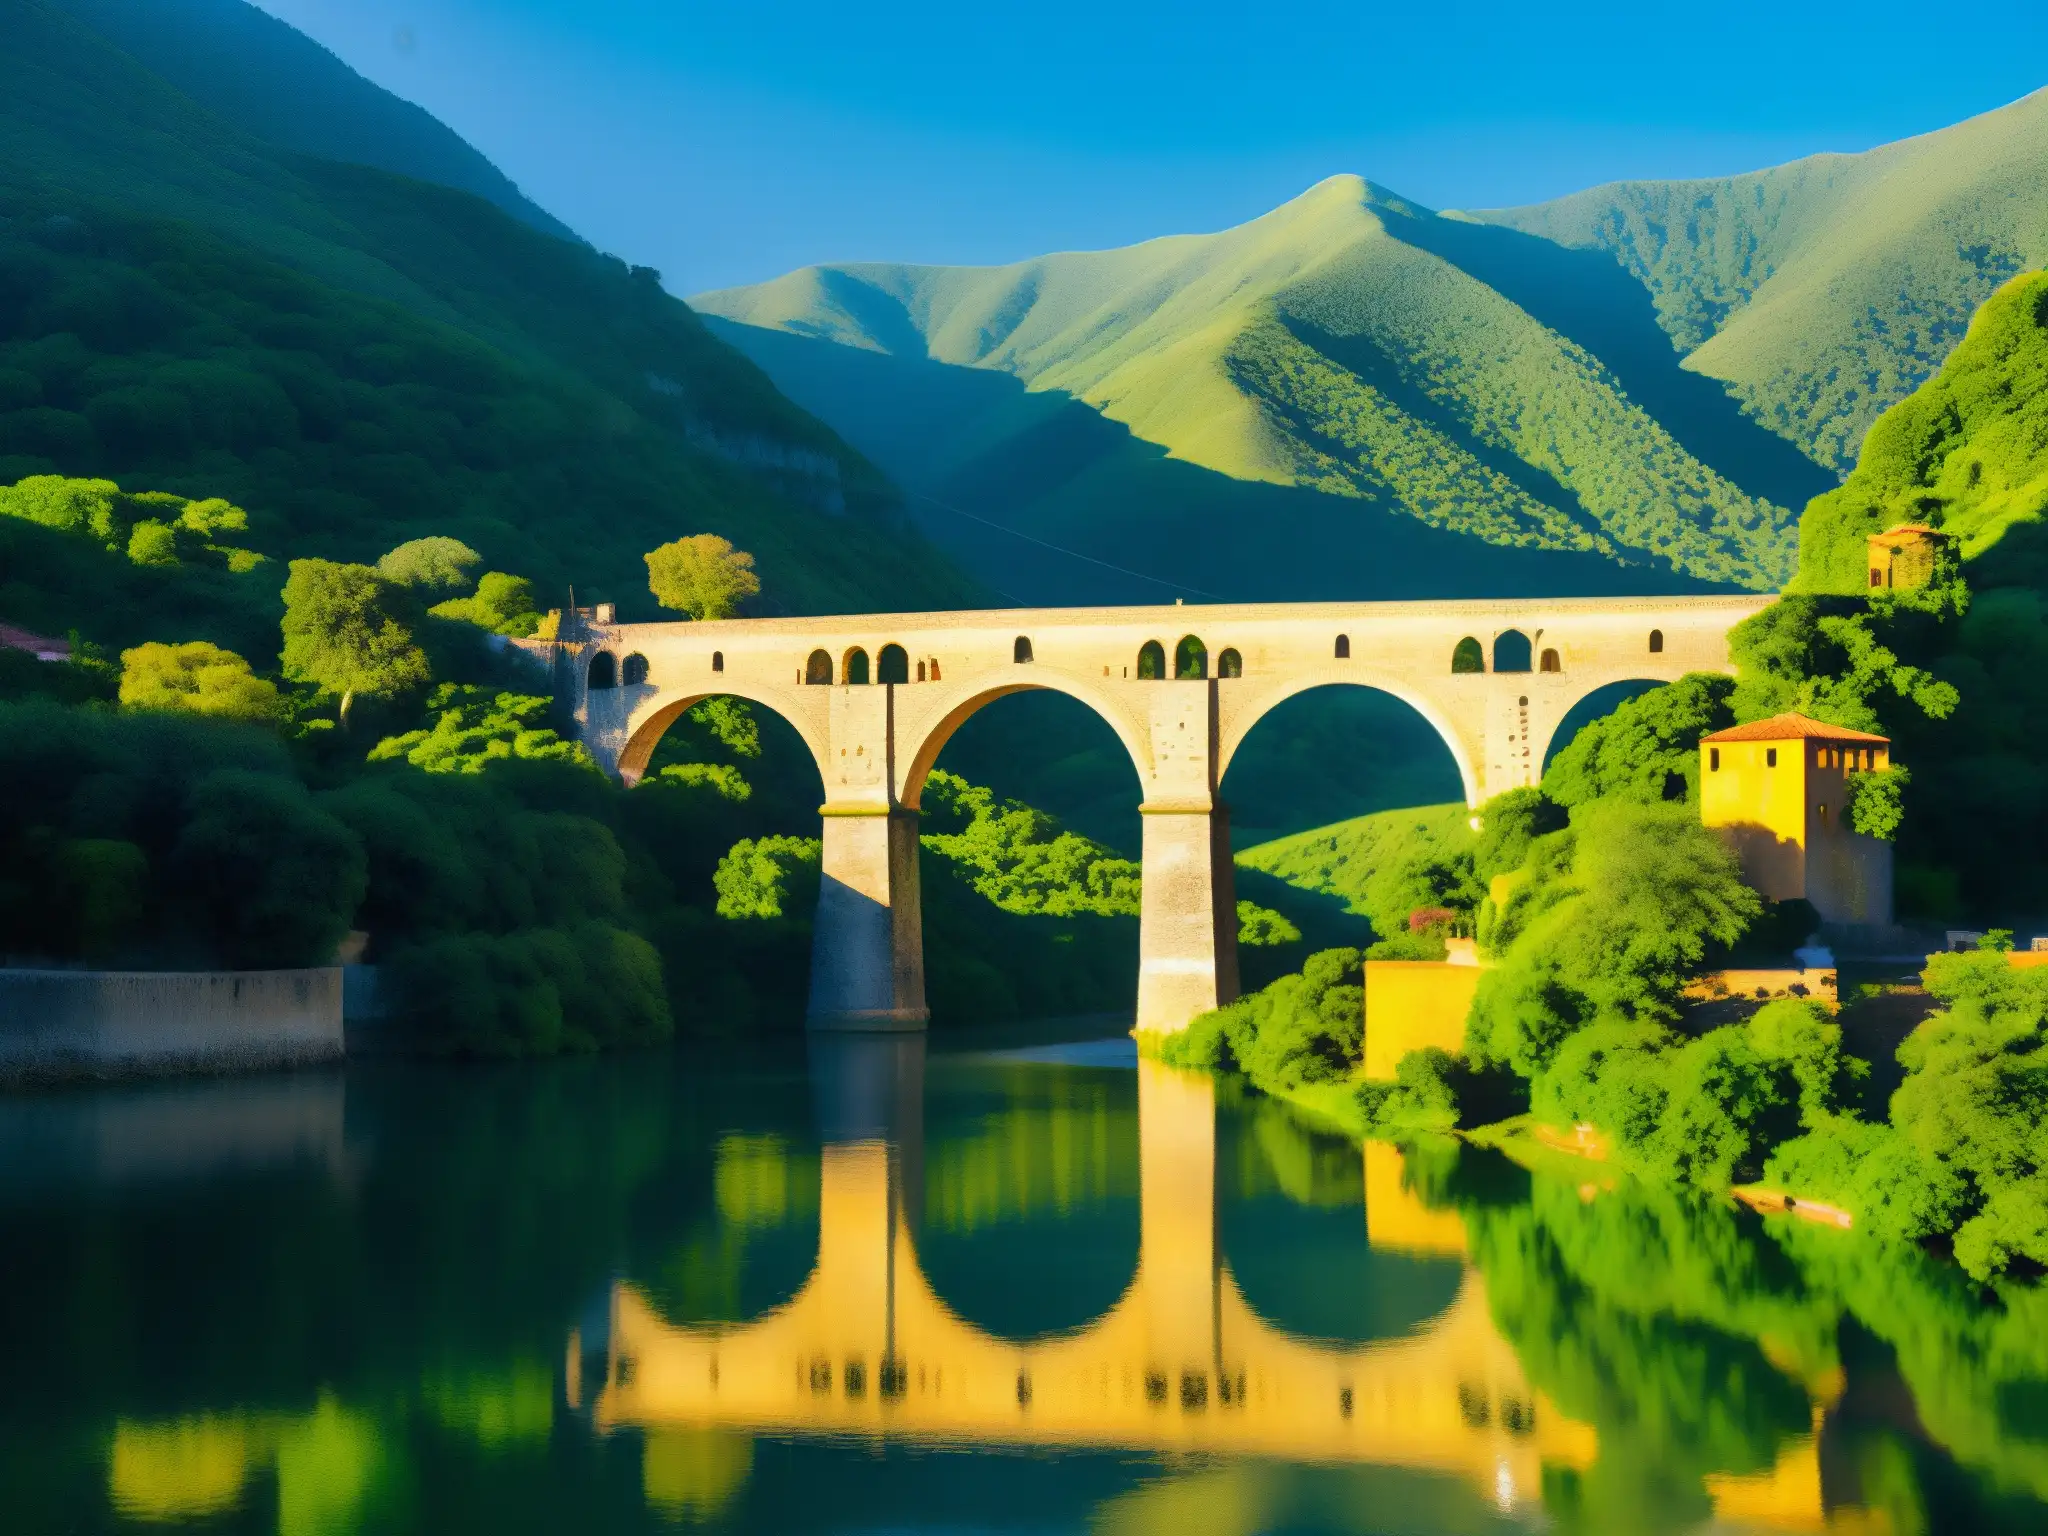 El legendario Puente de Metlac se yergue majestuoso entre montañas verdes, bañado por la cálida luz del sol